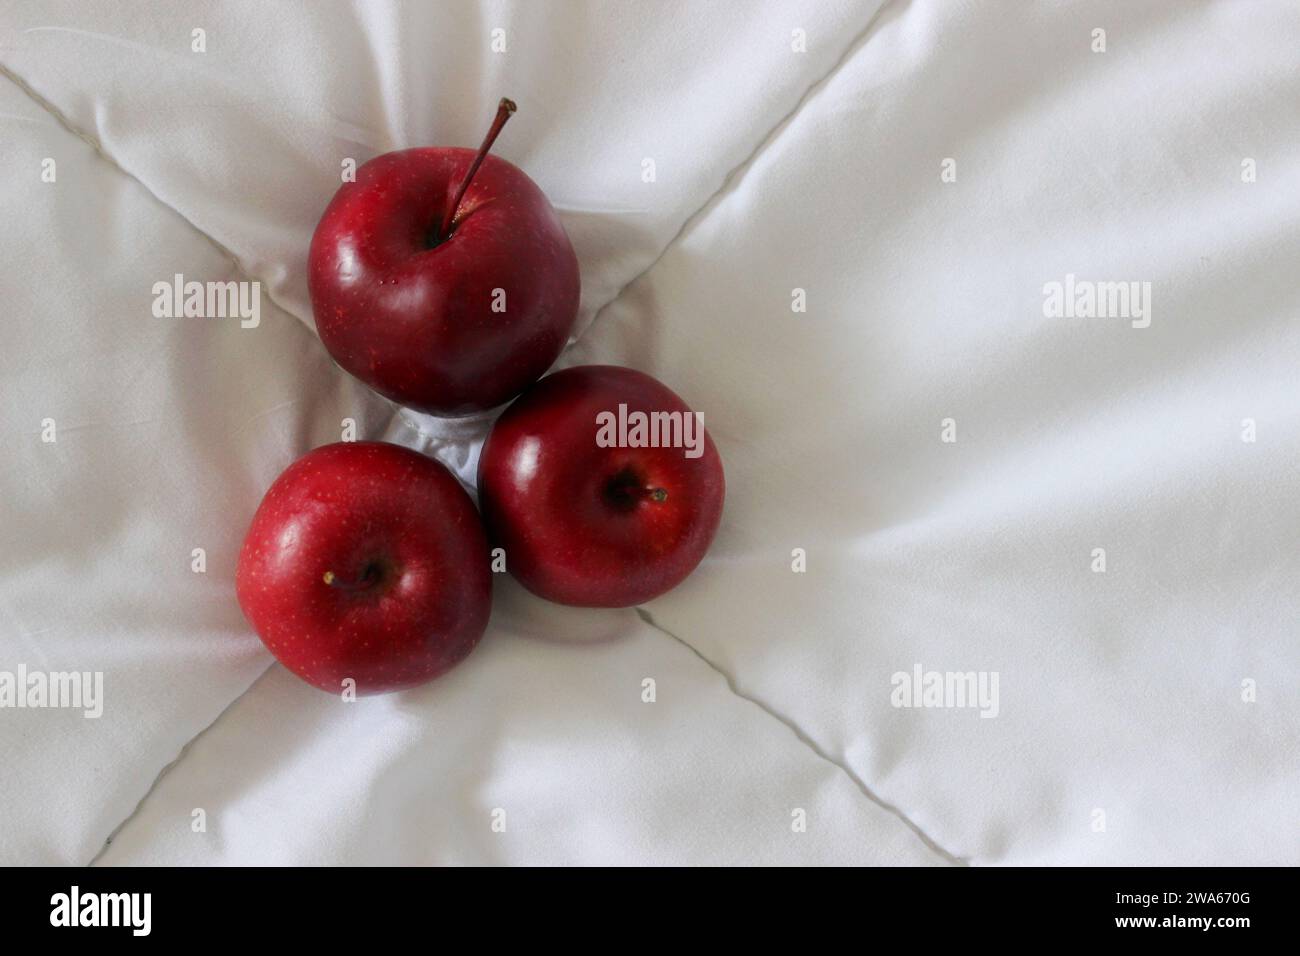 Trois pommes juteuses rouges sur Un tissu blanc Voir photo stock Banque D'Images